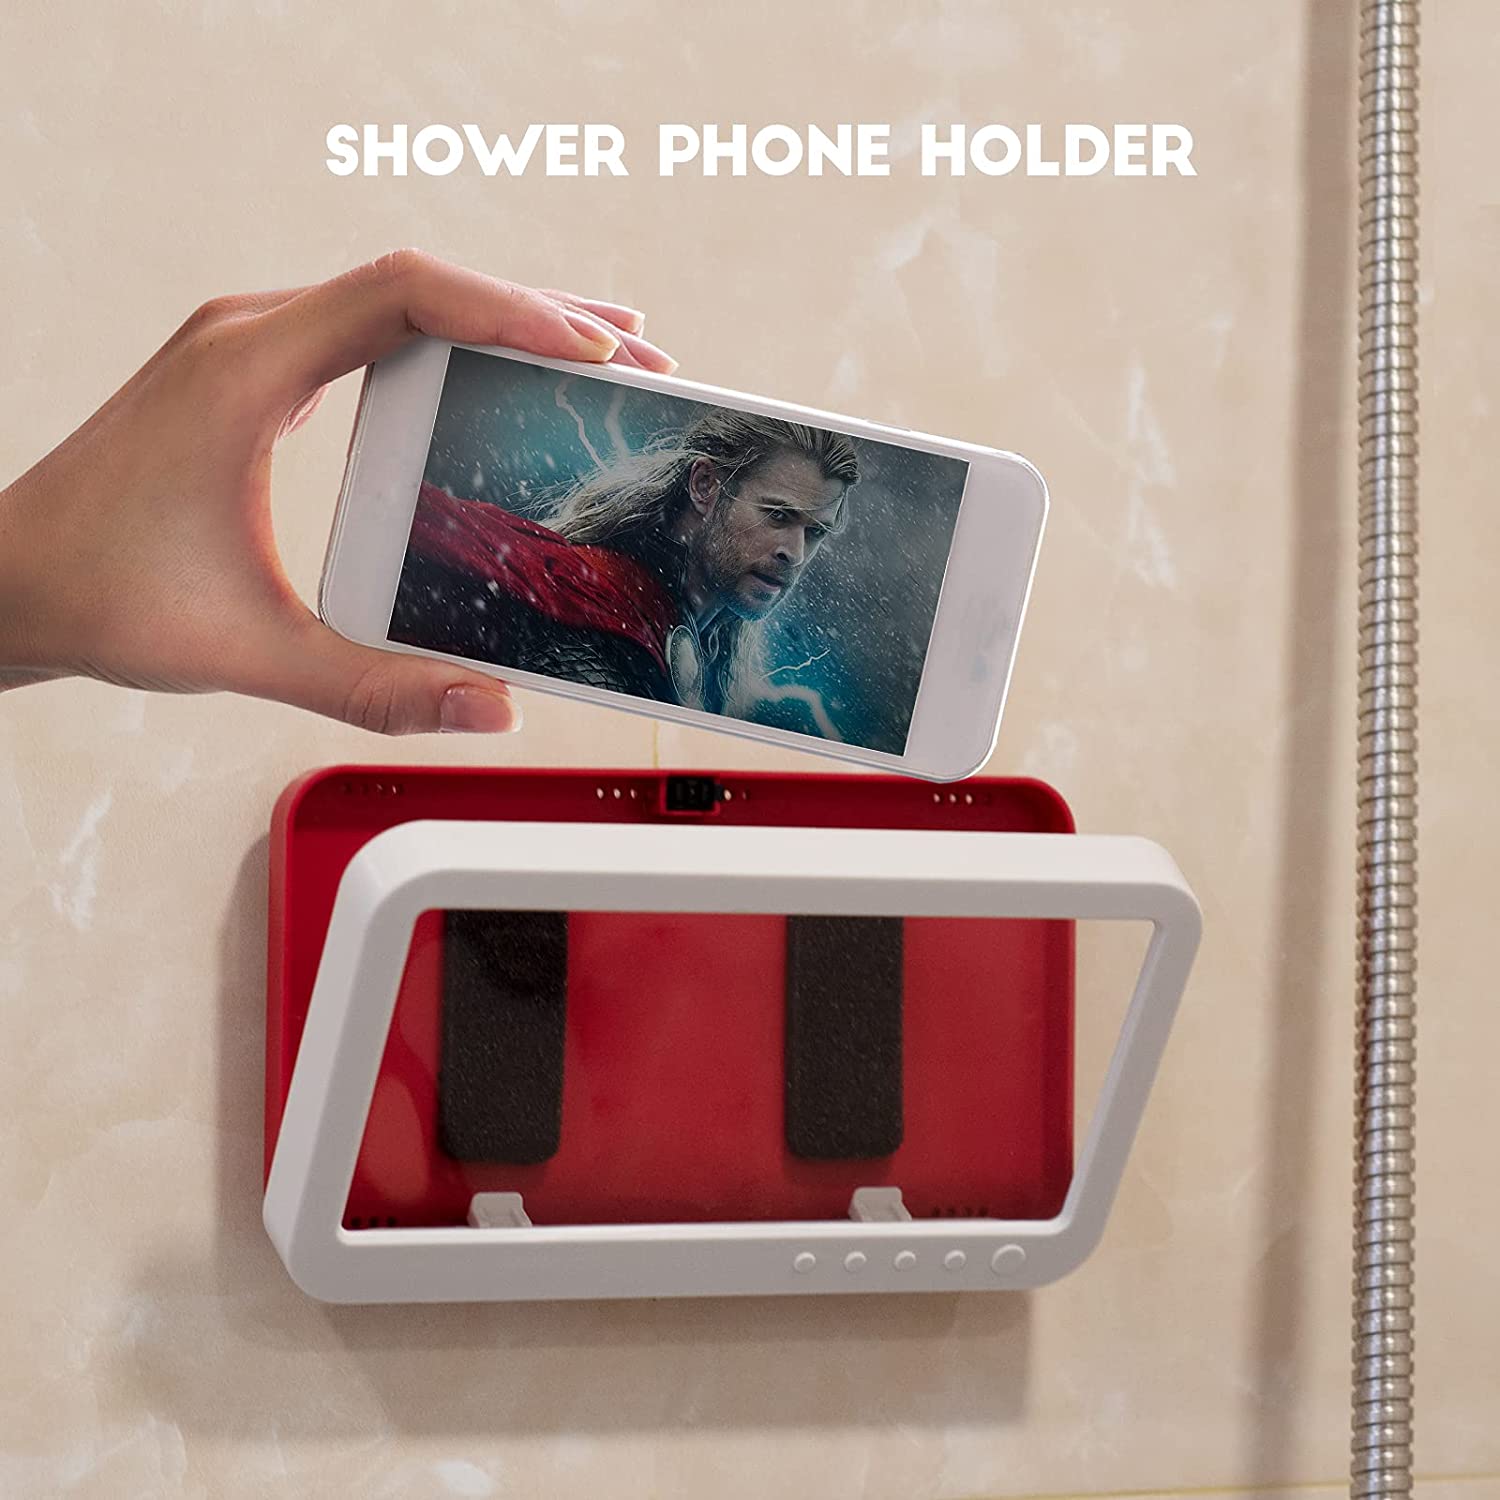 Homezo™ Shower Phone Holder